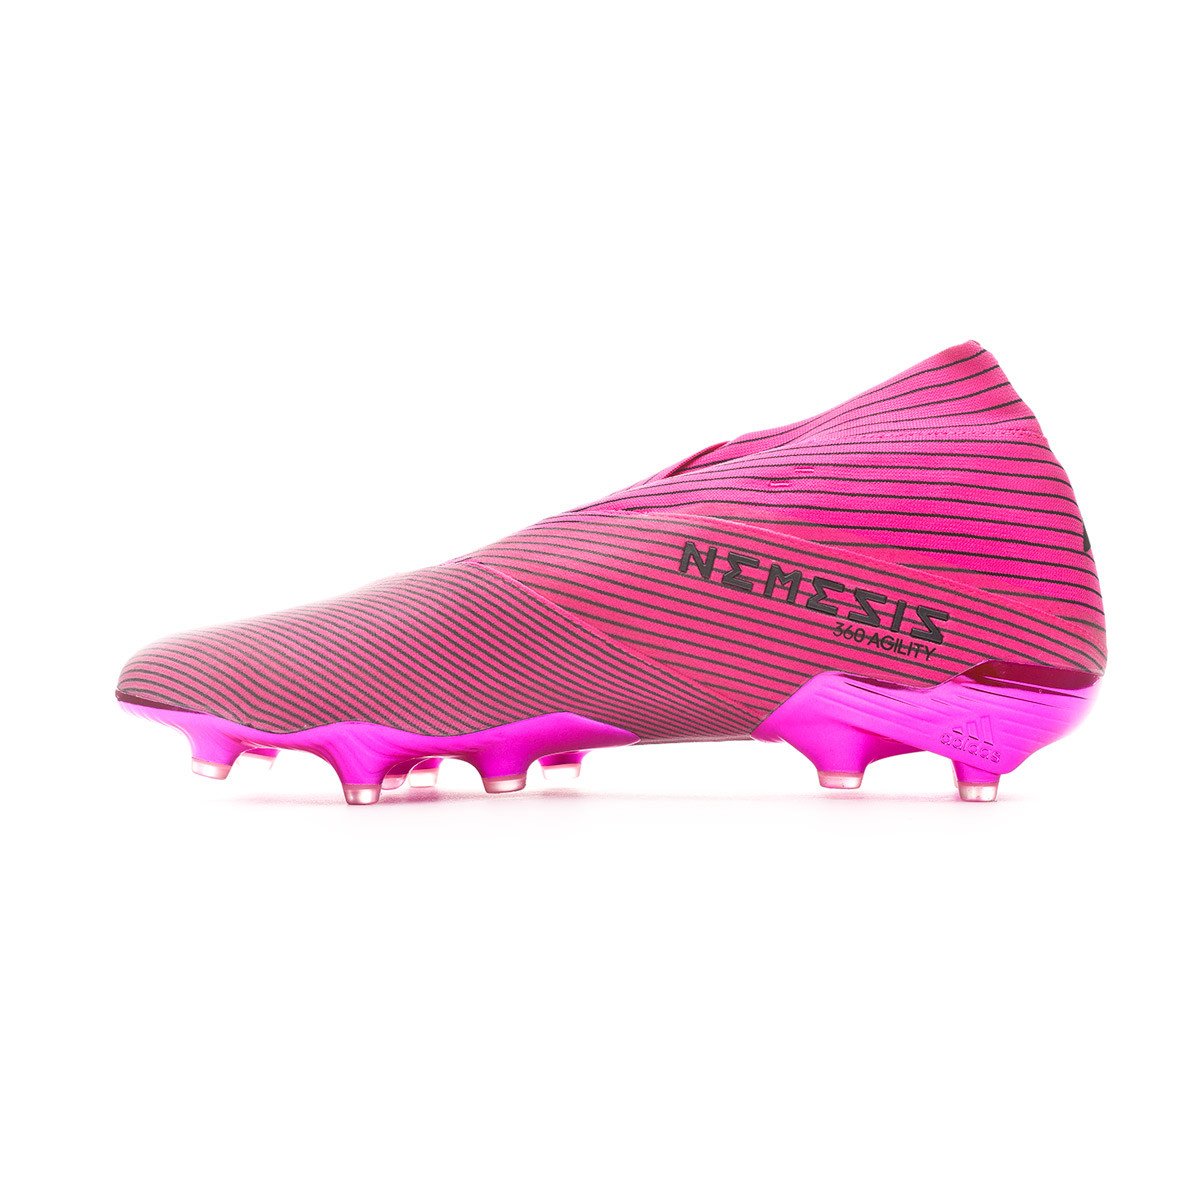 new adidas nemeziz football boots